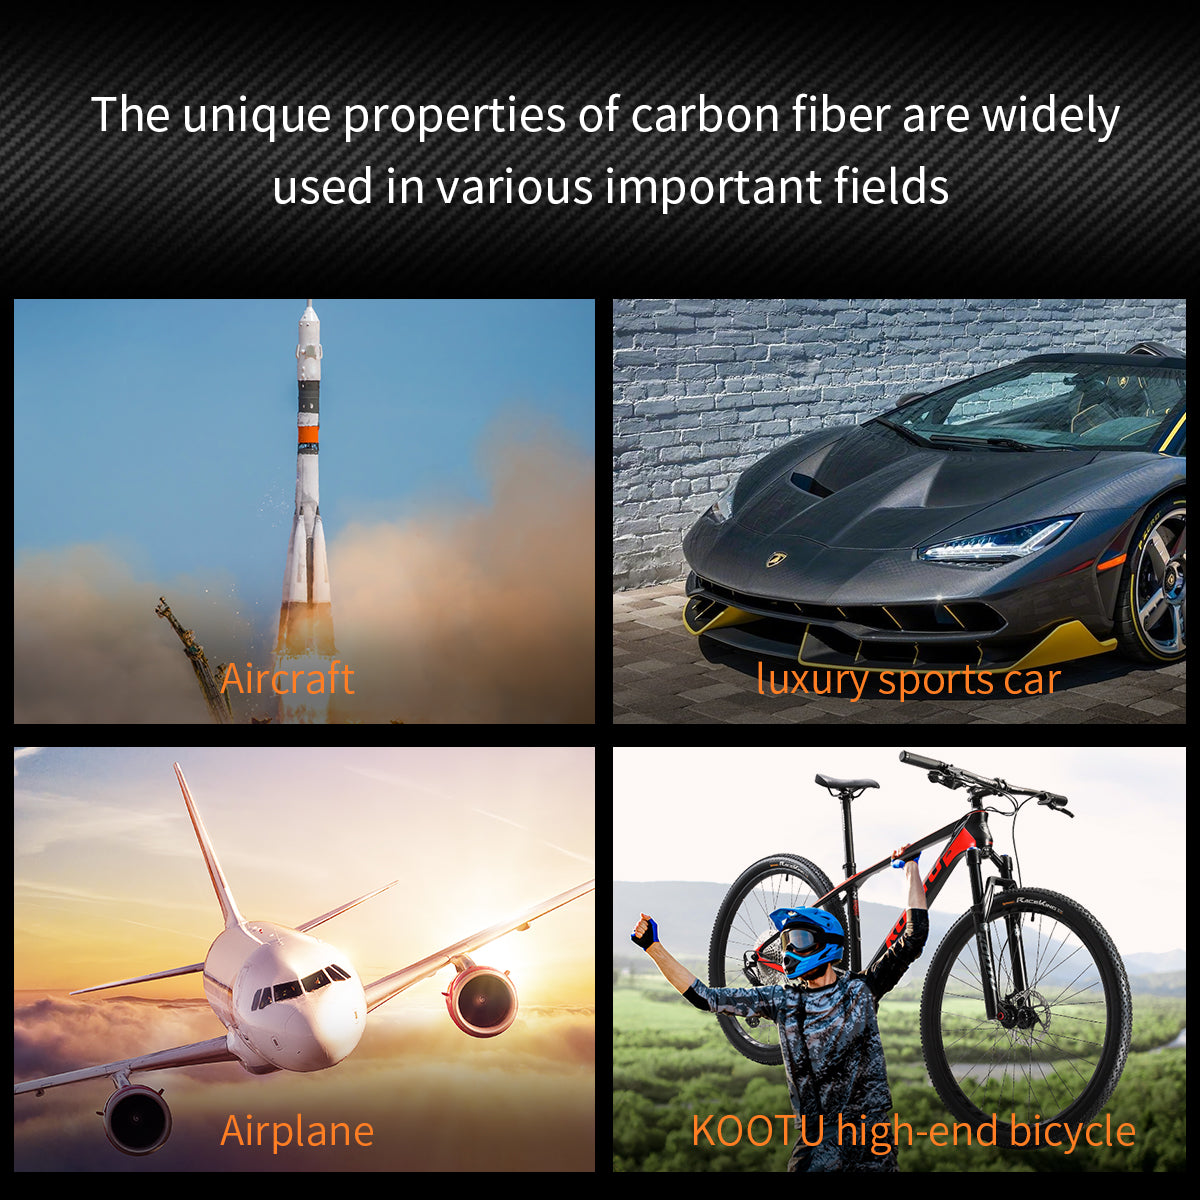 Carbon fiber applications